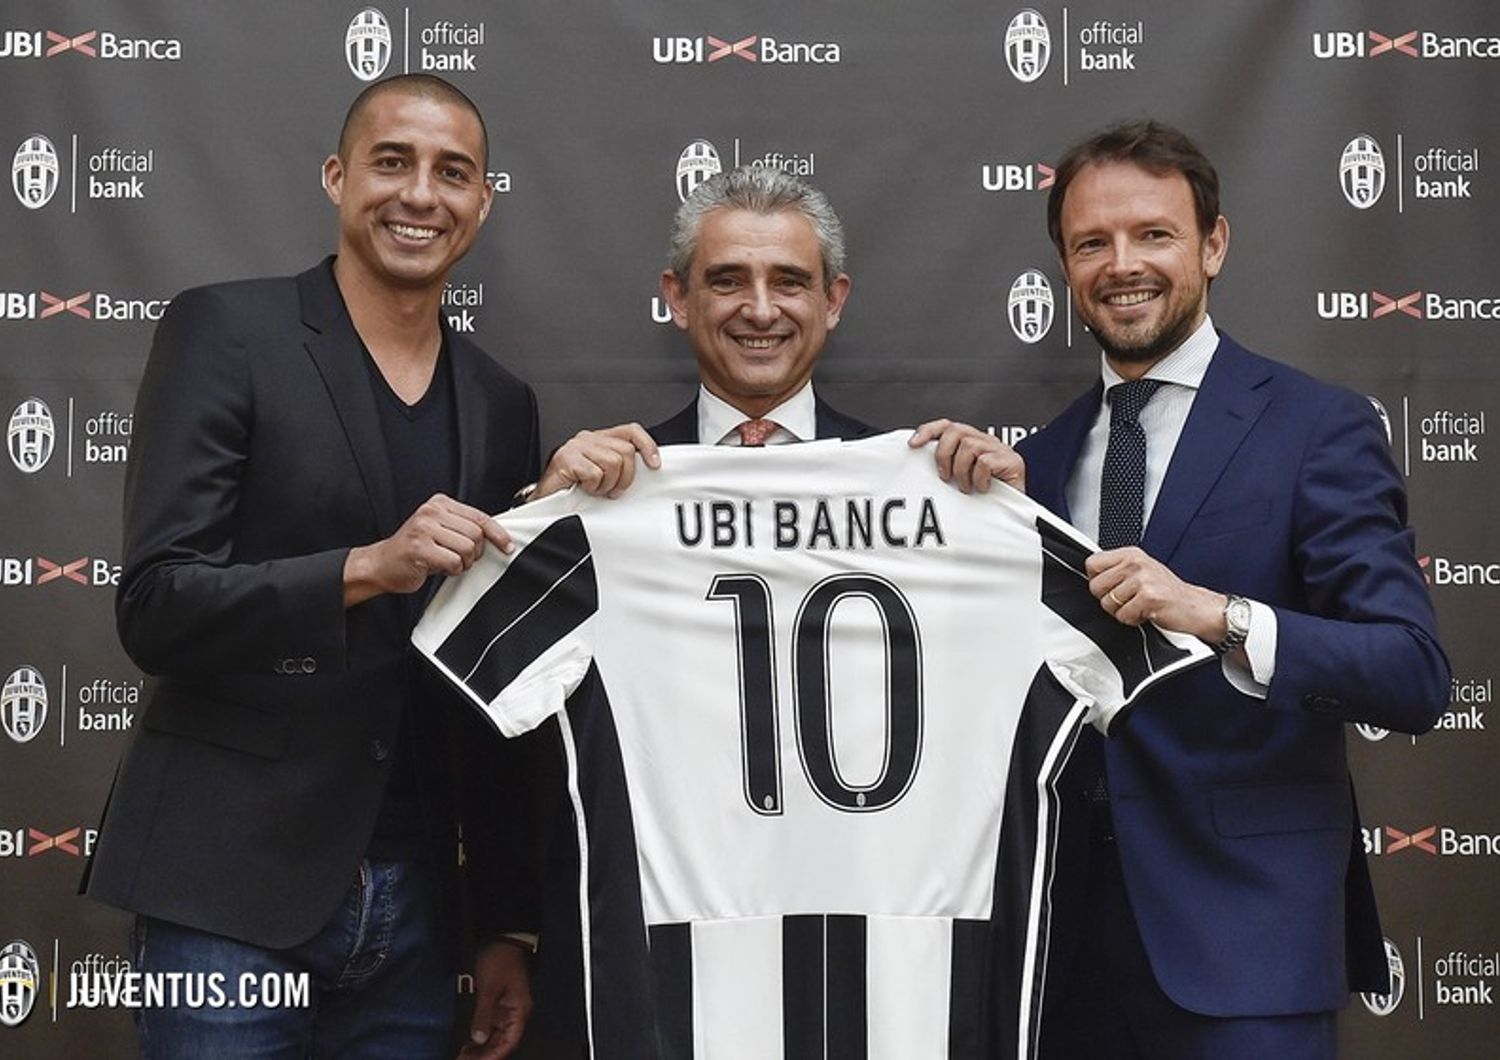 &nbsp;Juventus Ubi banca - sito